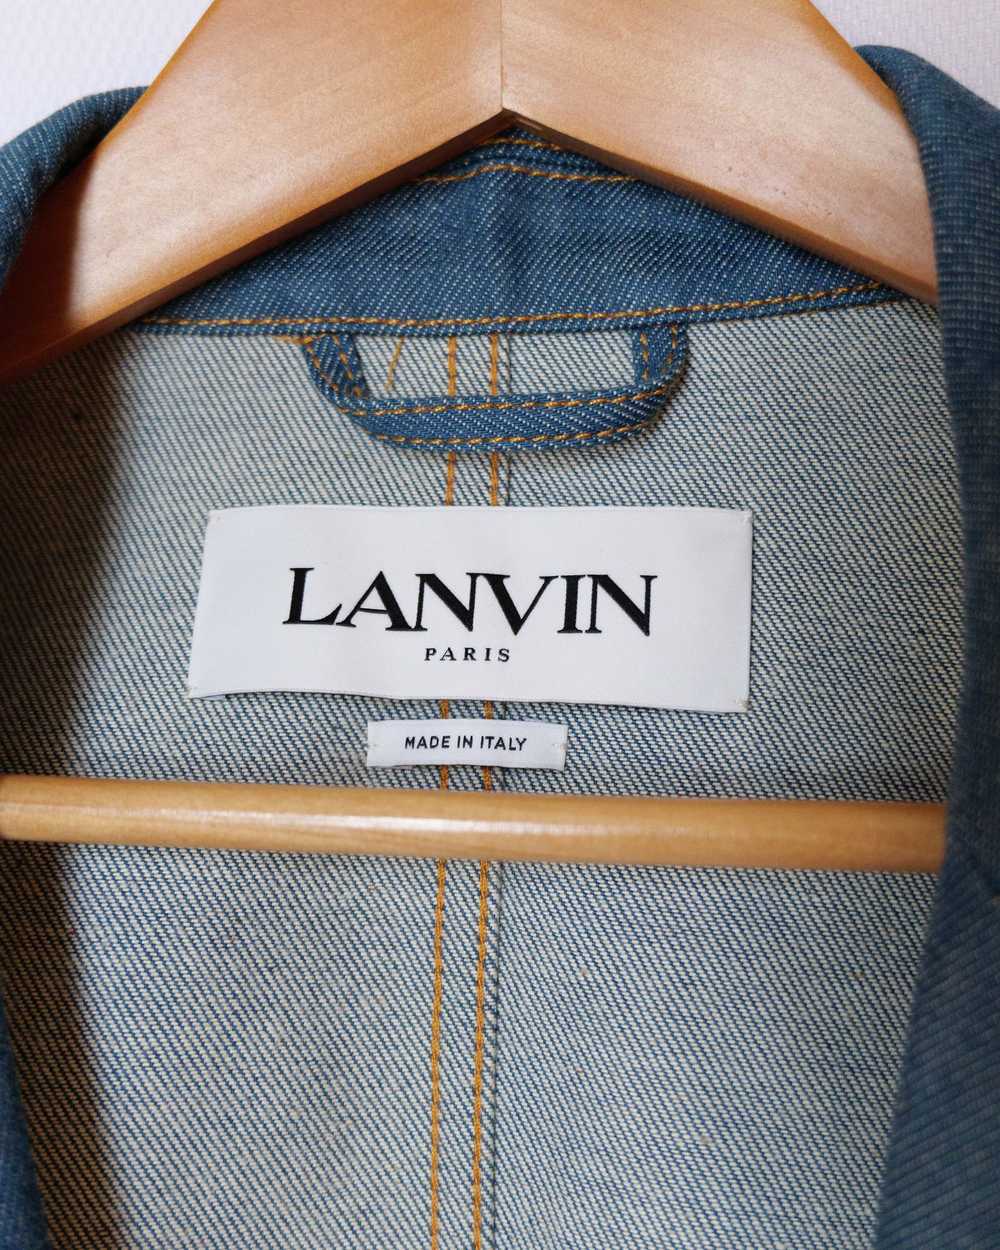 Lanvin denim jacket - image 5